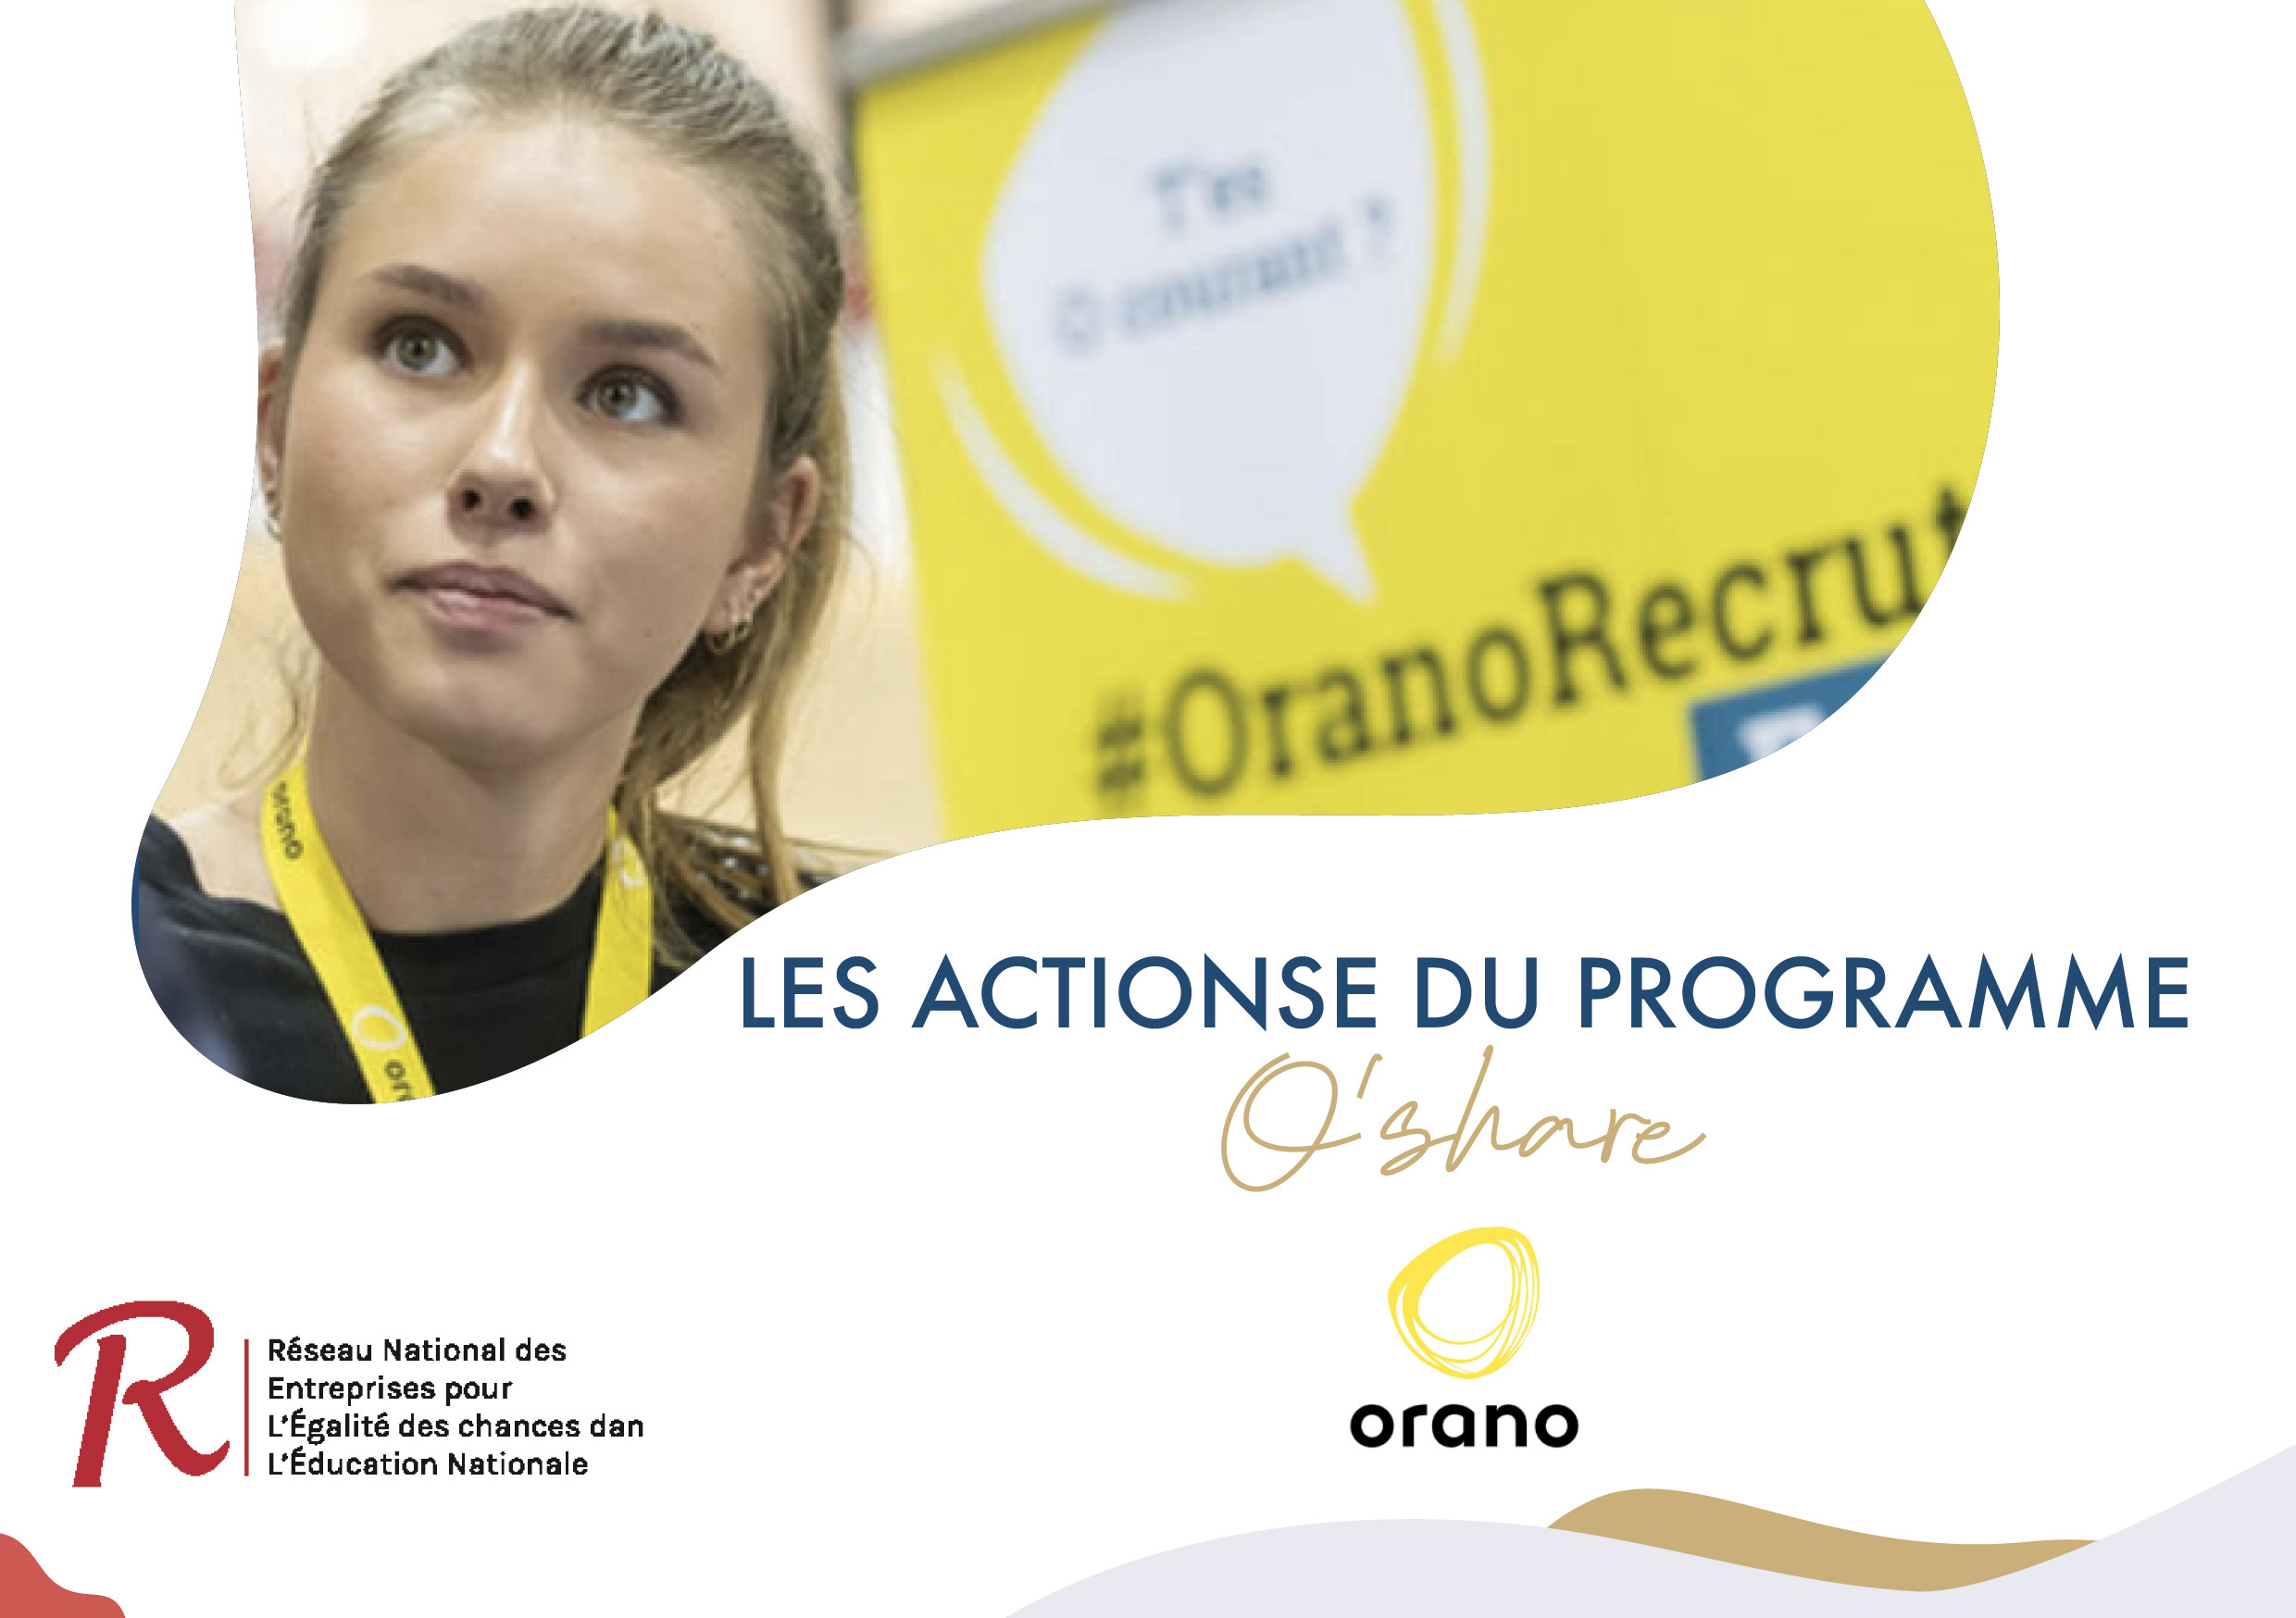 Le programme O’share d’Orano en partenariat avec Le Réseau